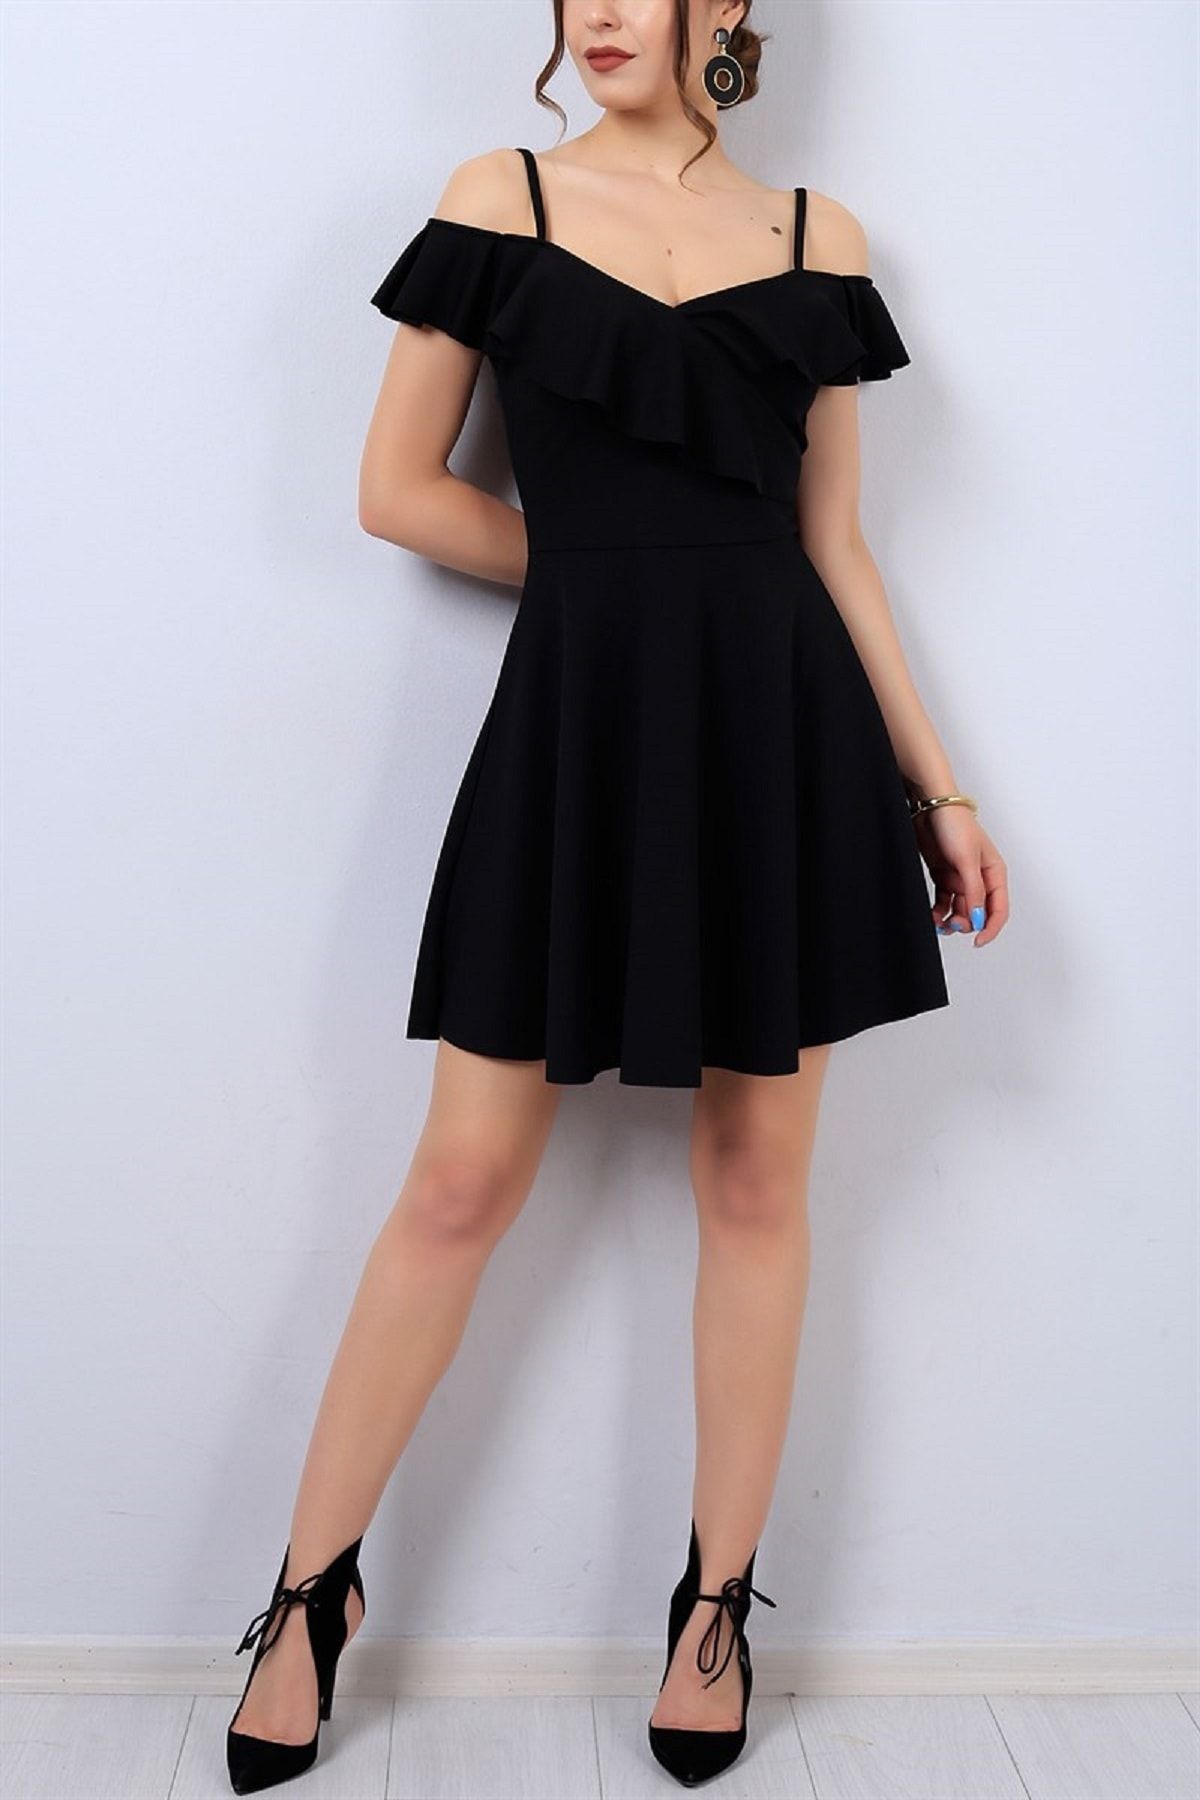 lovebox Yakası Volan Detaylı Ince Askılı Esnek Krep Kumaş Kiloş Siyah Mini Elbise 077